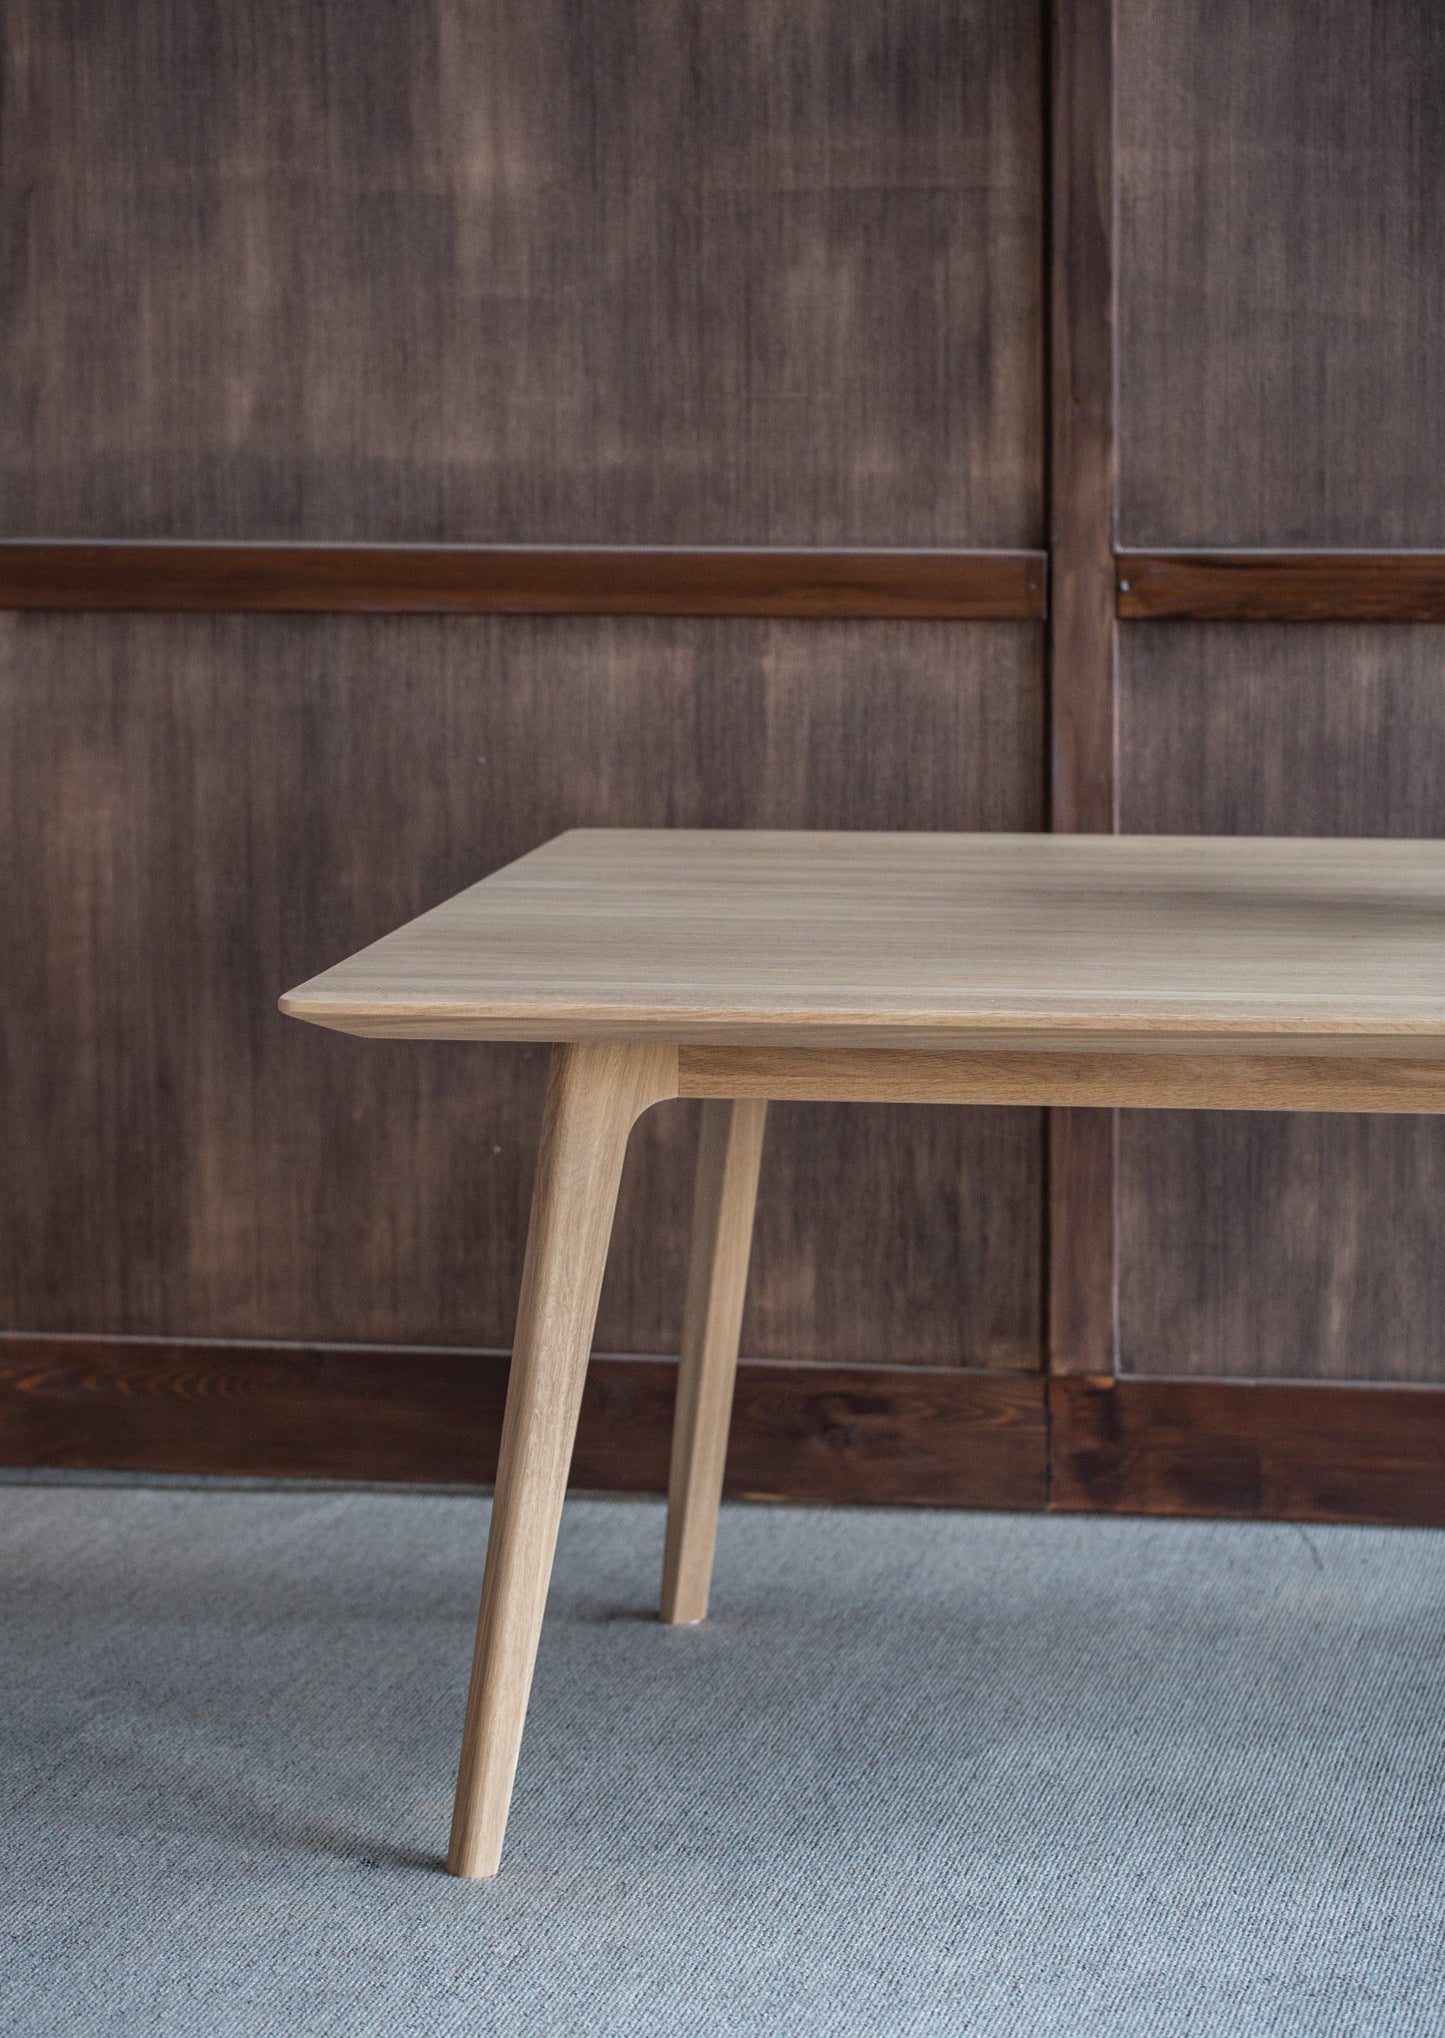 Spisebordet Skandi er et av våre mest populære spisebord som har tidløst design. Den naturlige bordplaten bringer frem treverkets karakter og er laget av høyeste kvalitet eik, noe som gjør at bordplaten er glatt, uten grener og sprekker, myk og raffinert.